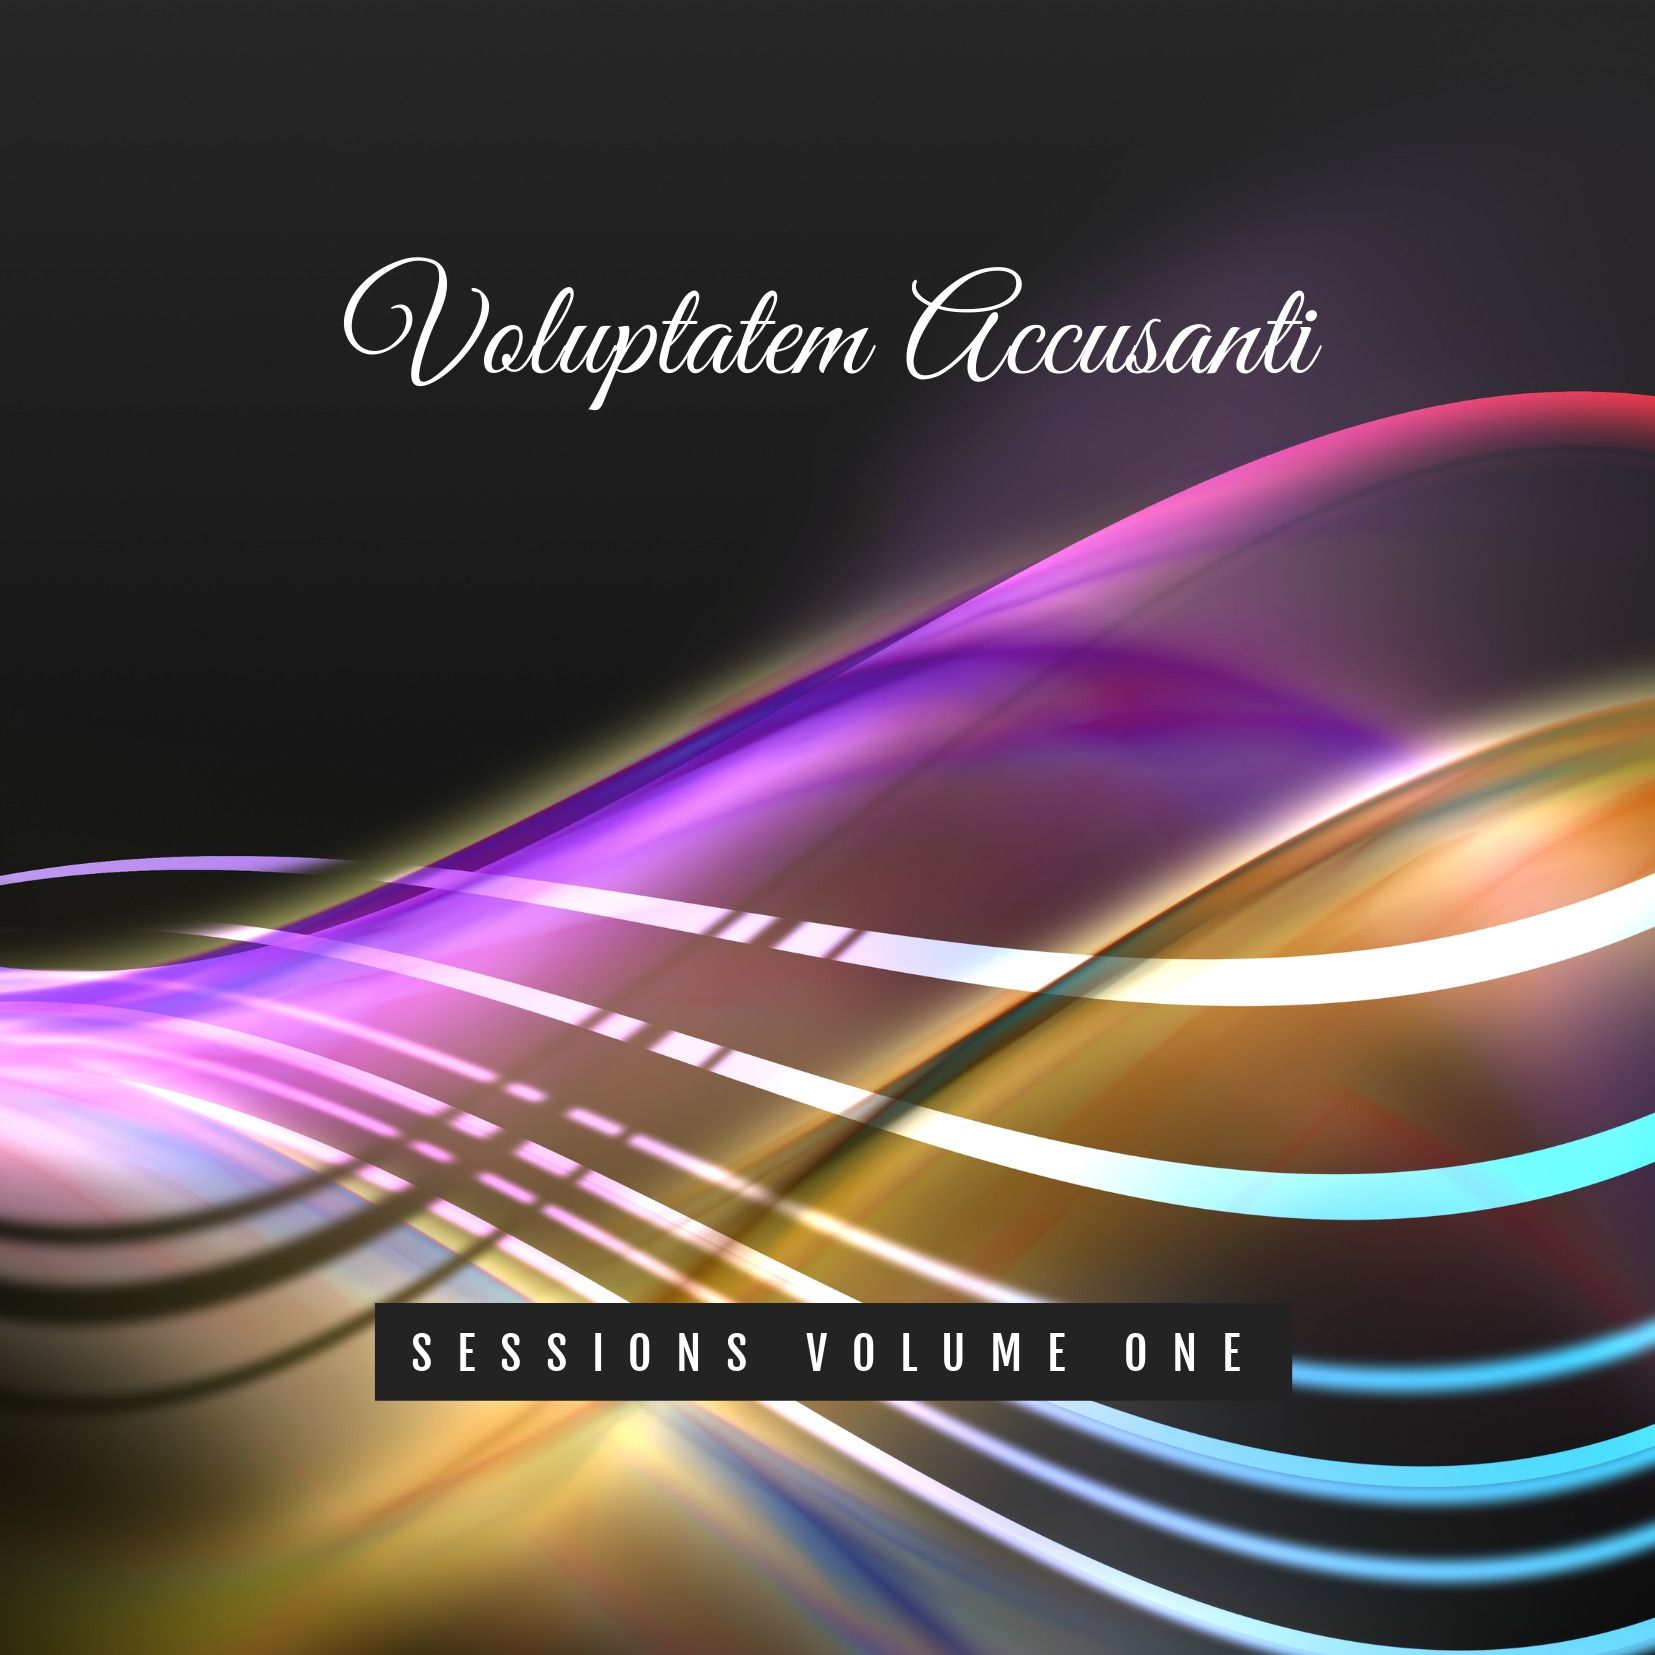 Luz púrpura y dorada sobre fondo negro Diseño de CD - Explosiones de color en el diseño de portada del álbum - Imagen